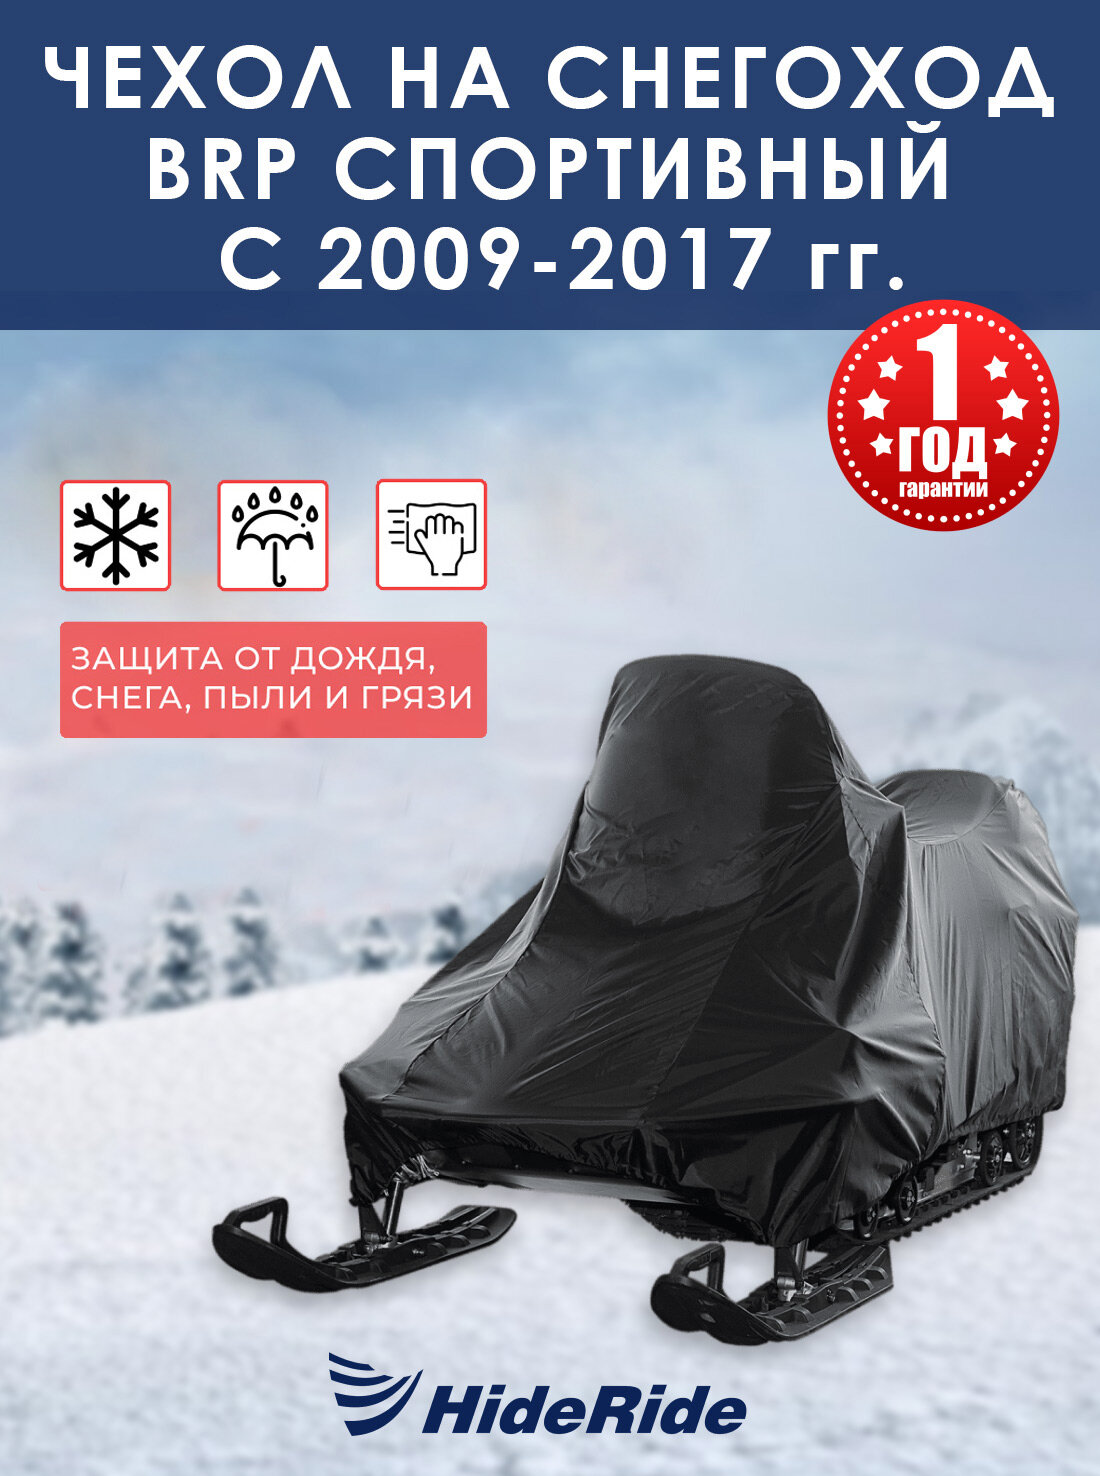 Чехол для снегохода BRP HideRide спортивный c 2009-2017 г стояночный тент защитный